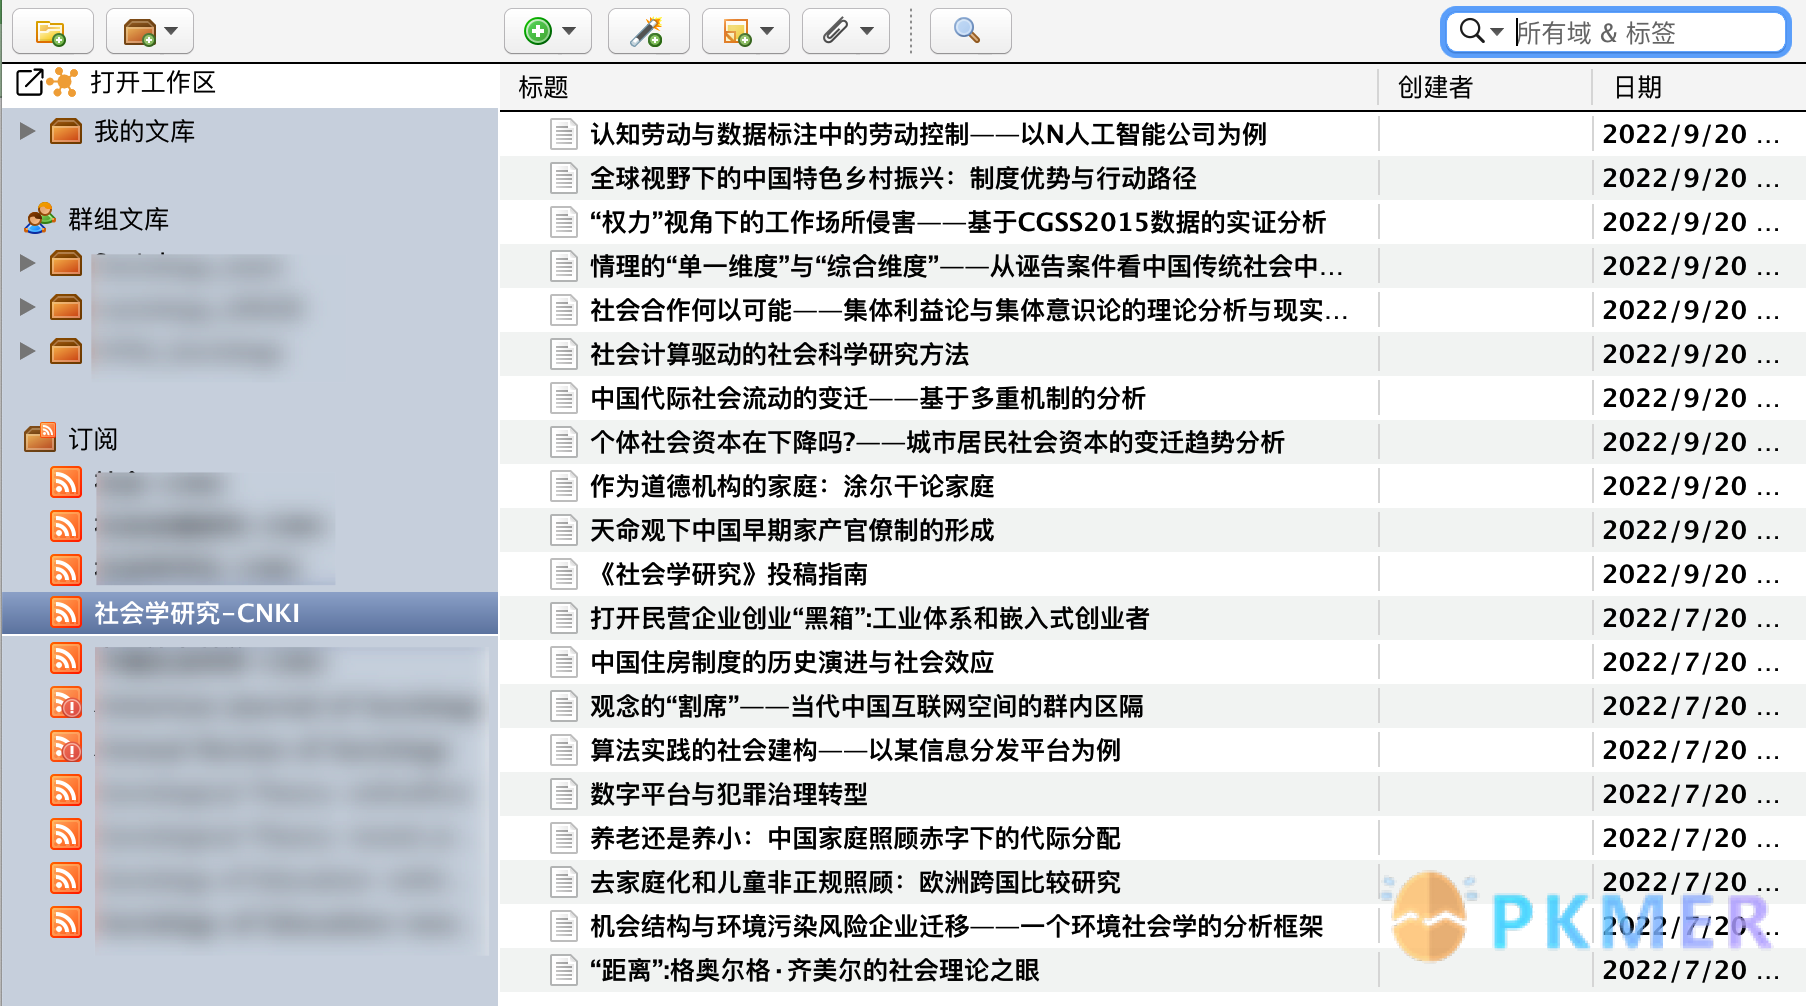 6- 期刊追踪：RSS 订阅--2.中文期刊订阅——以知网为例